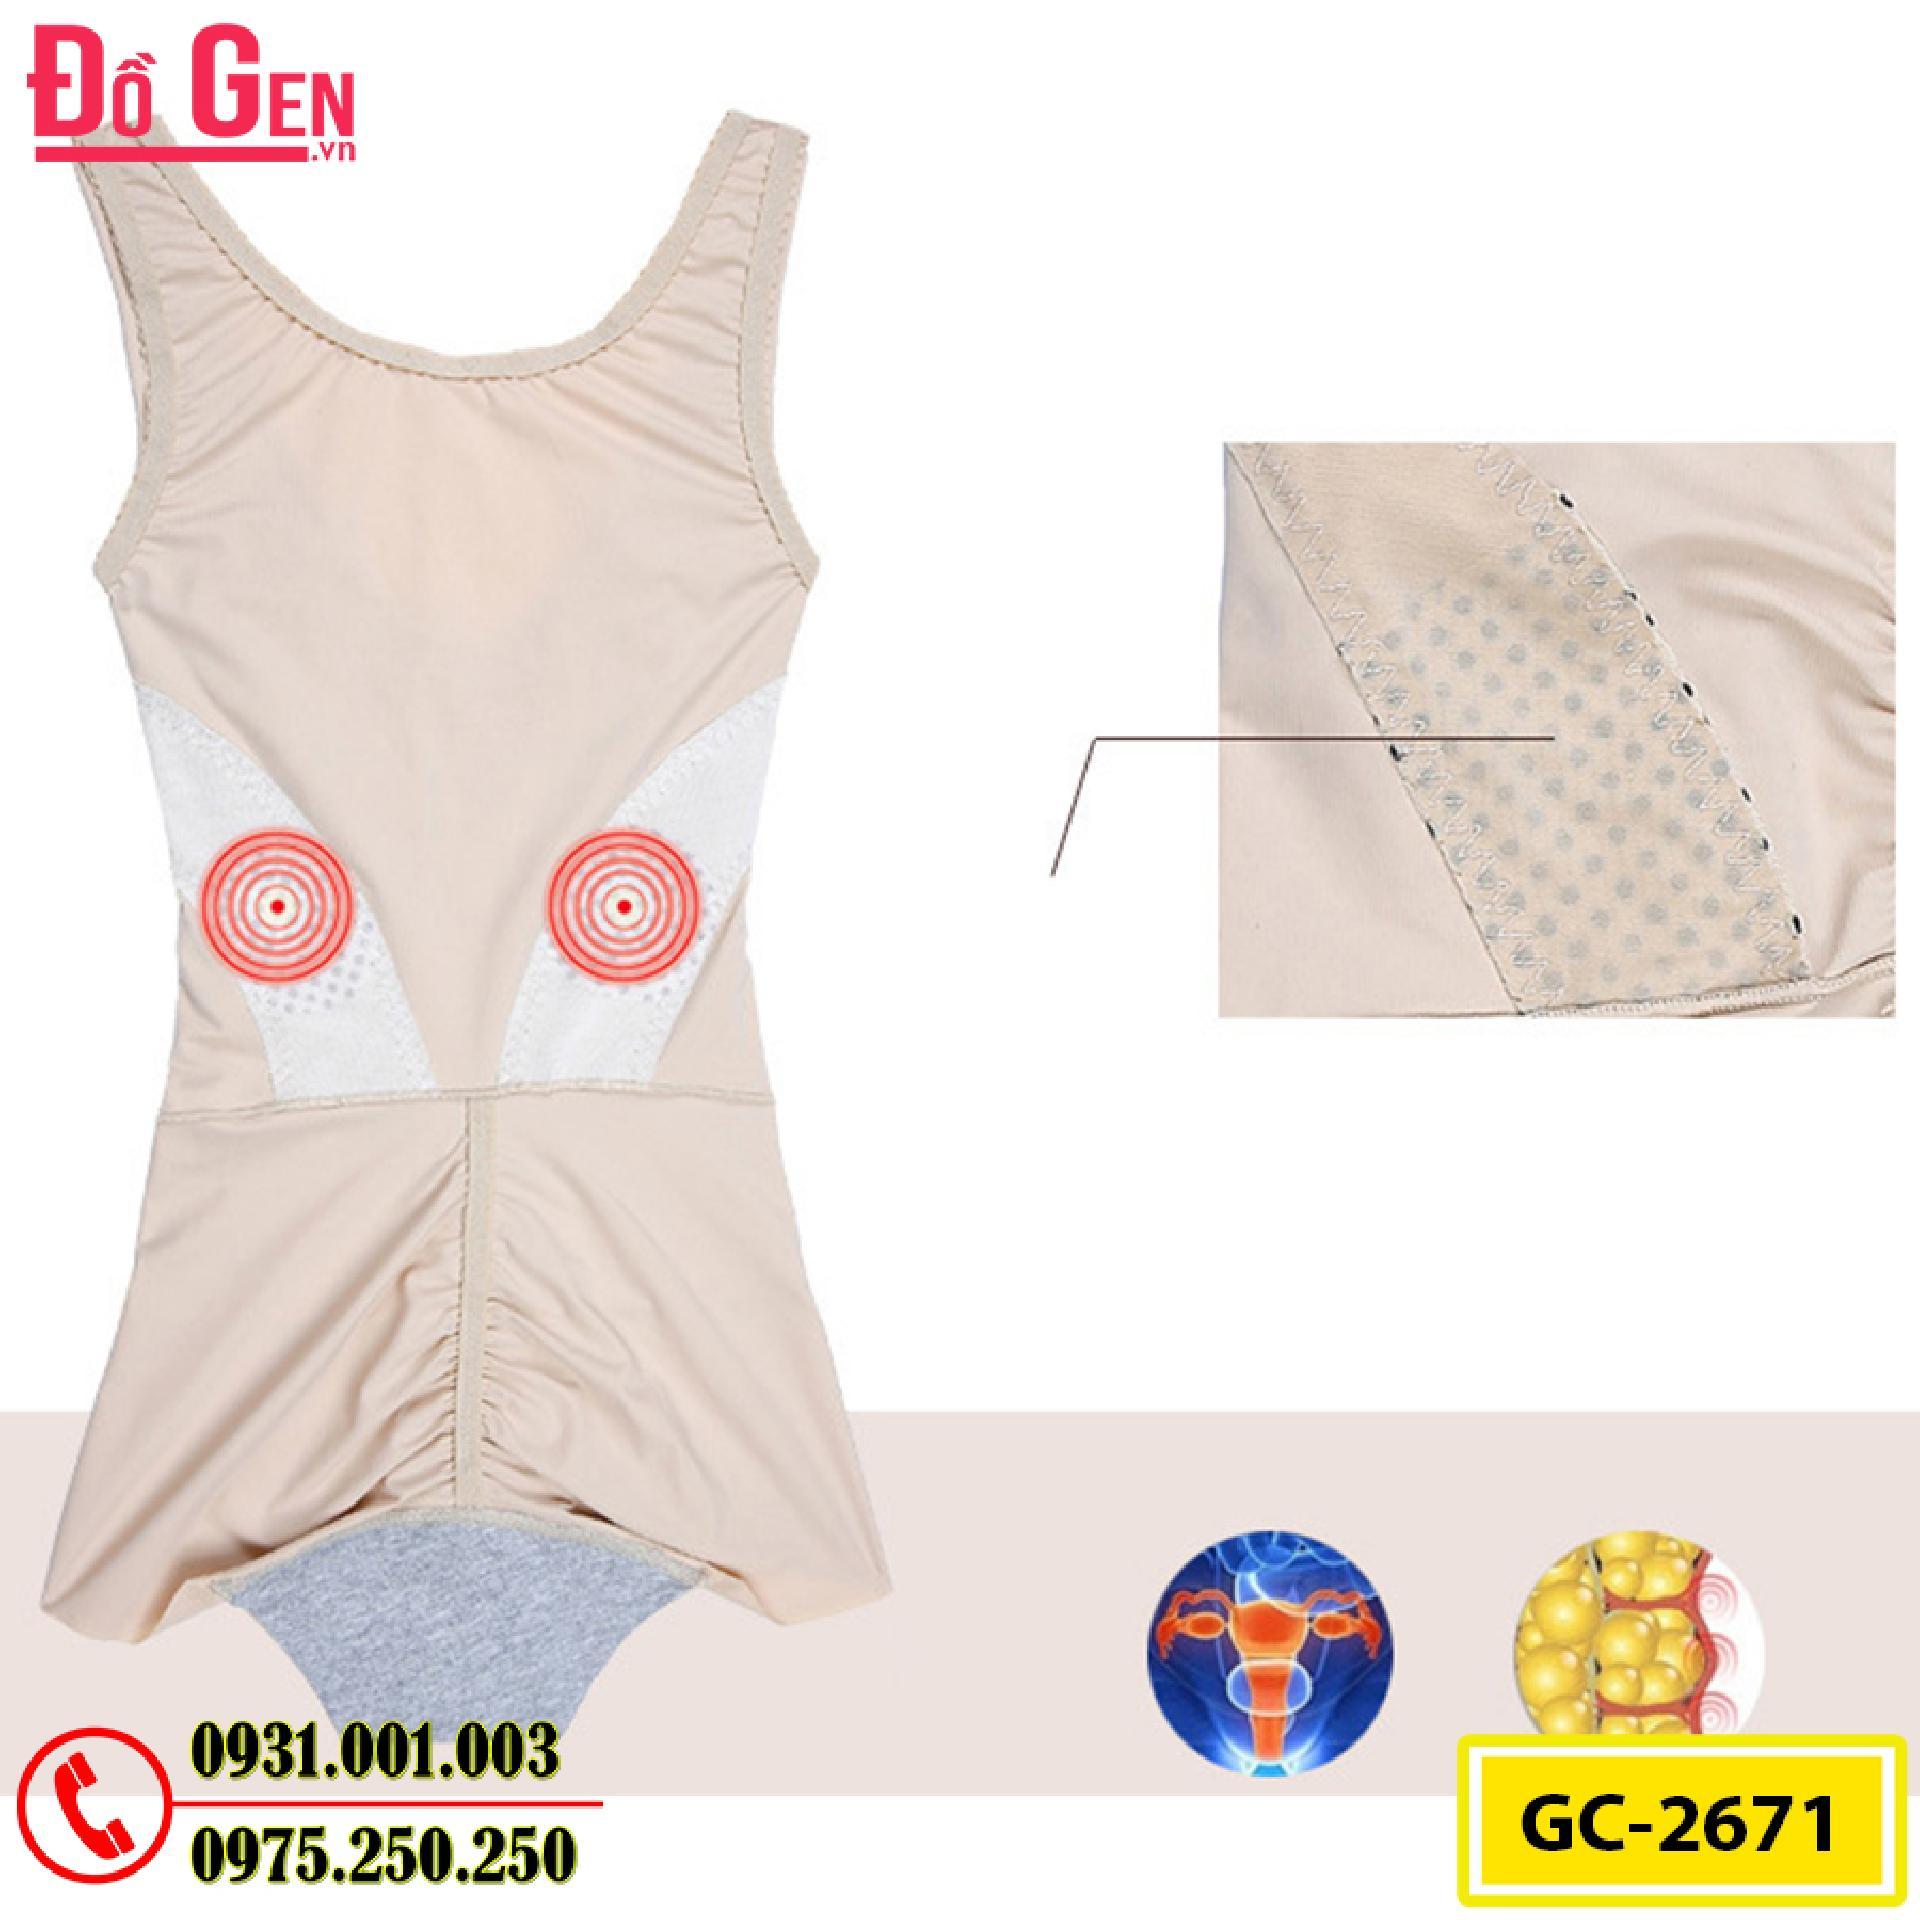 Đồ Lót Định Hình - Quần Áo Gen Định Hình Bikini Liền Thân Cao Cấp (Cod: GC-2671)